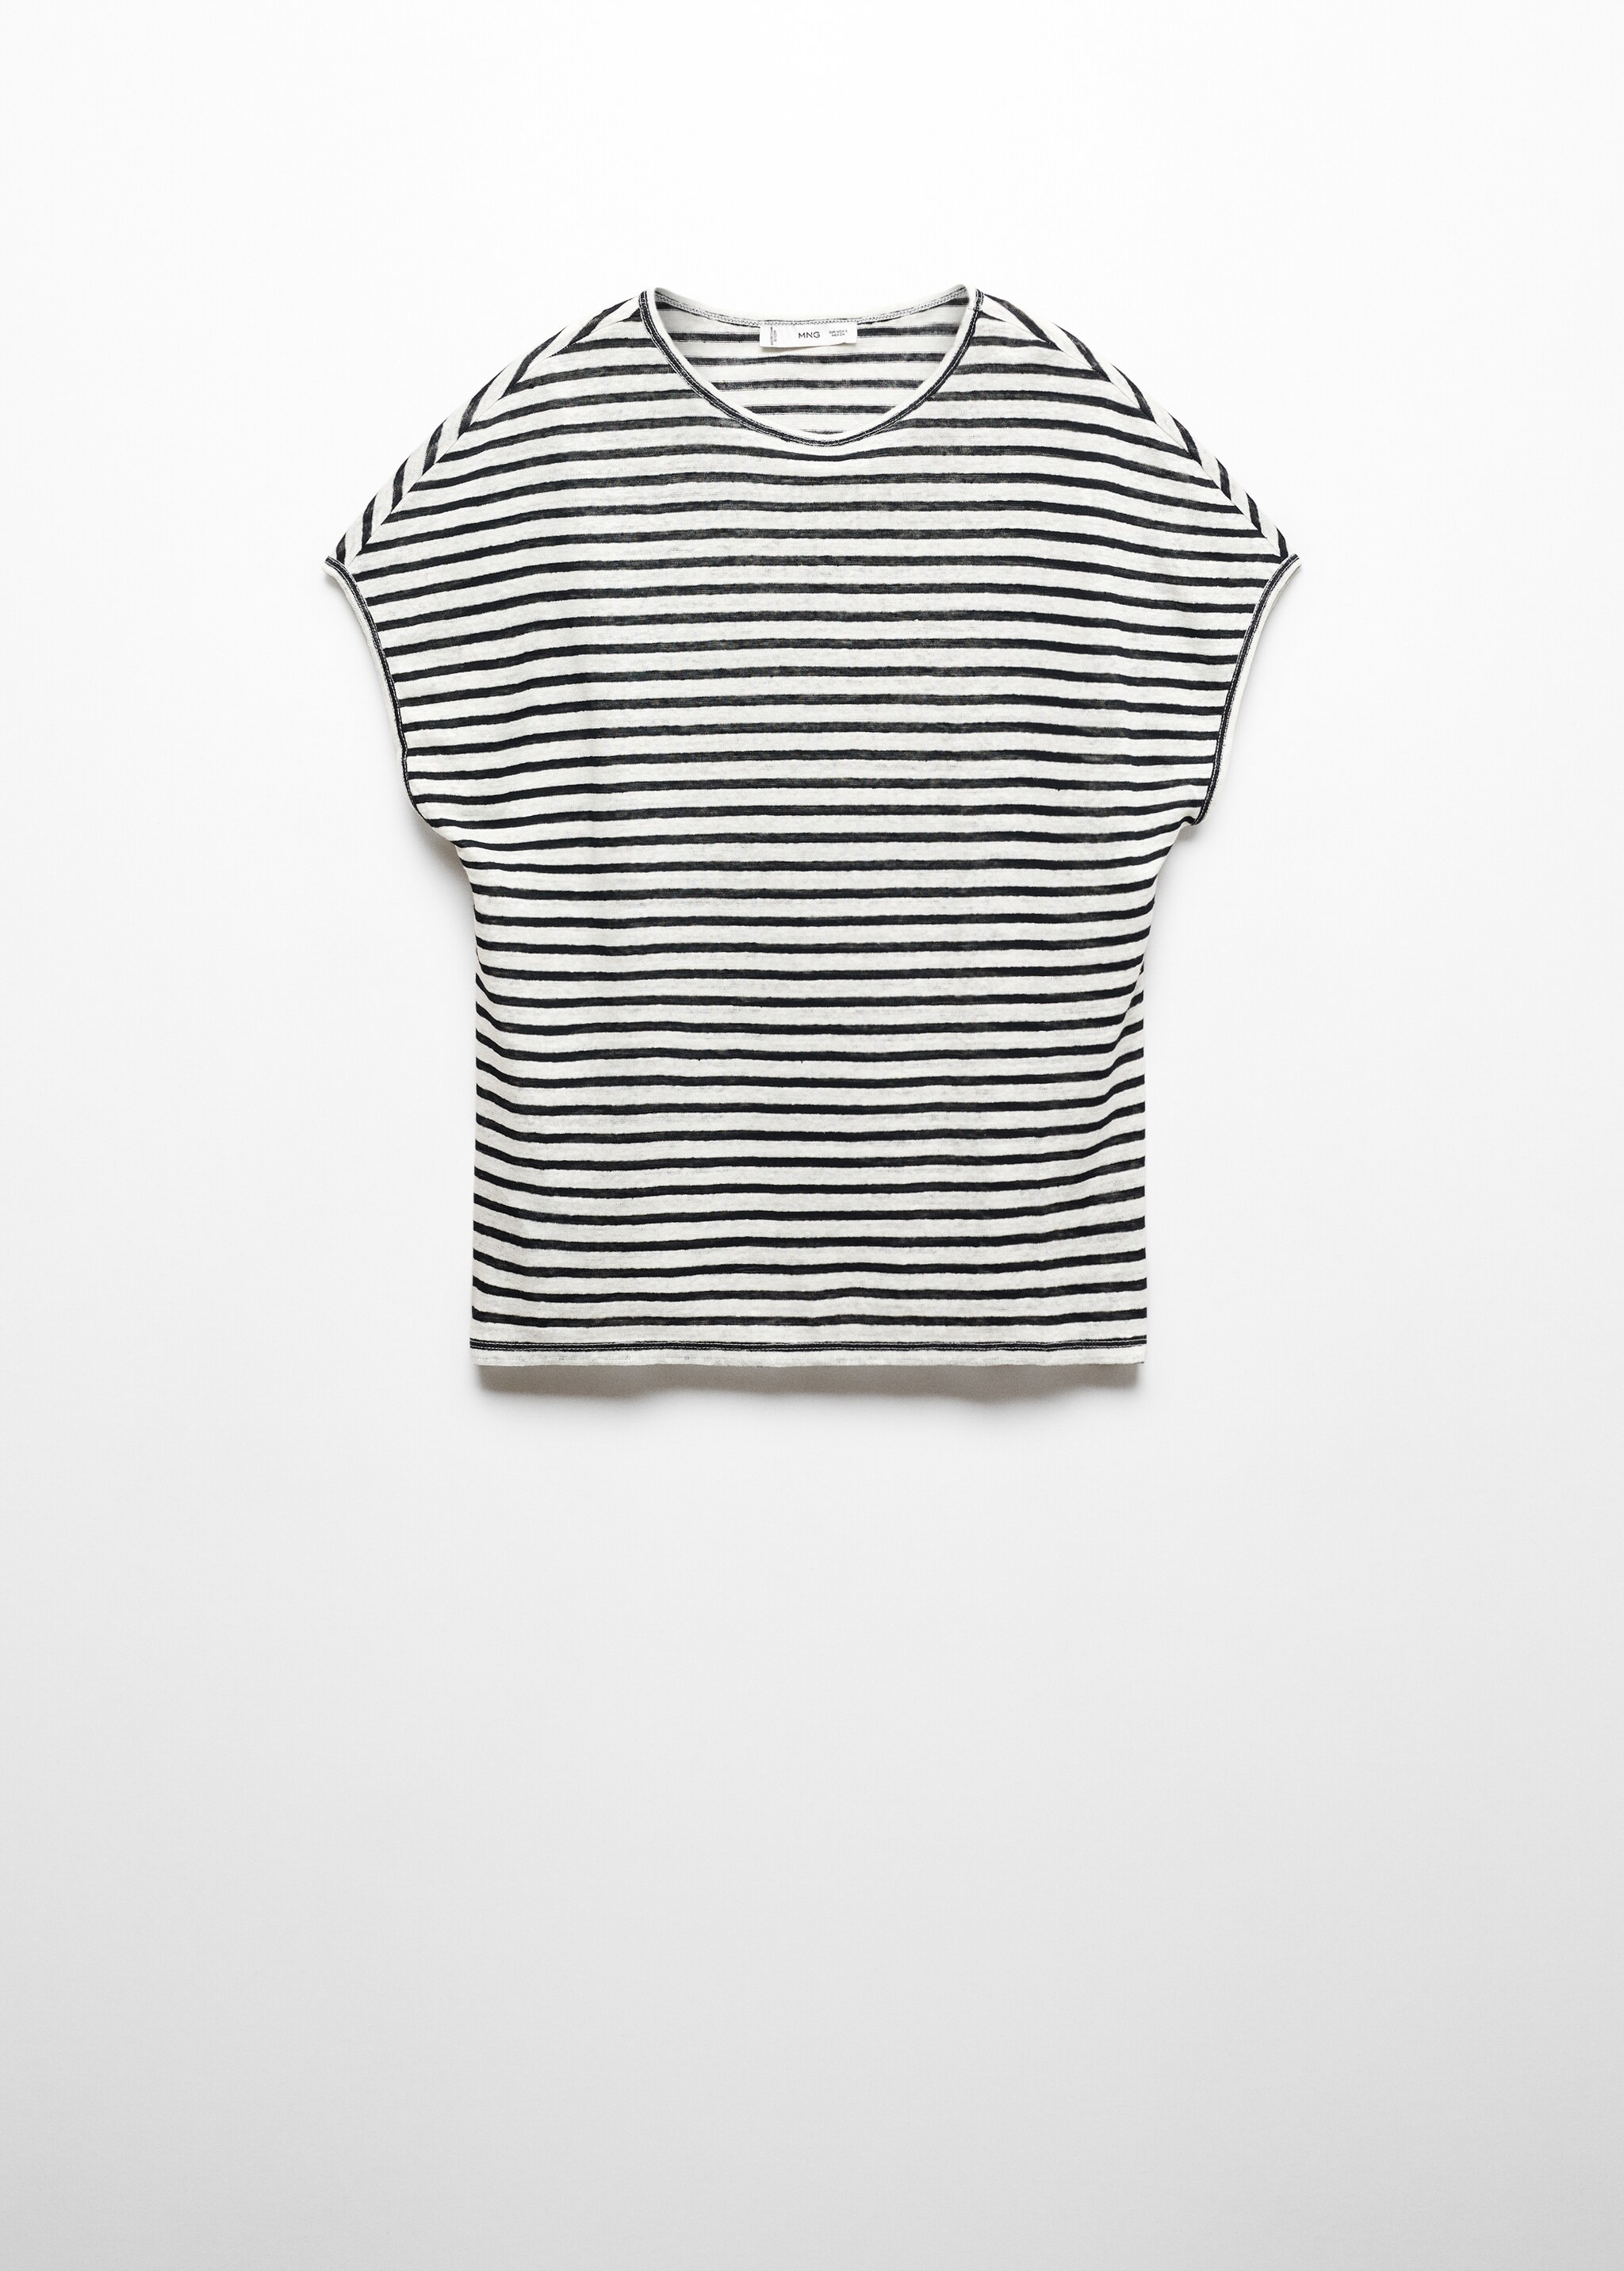 Camiseta 100% lino - Artículo sin modelo